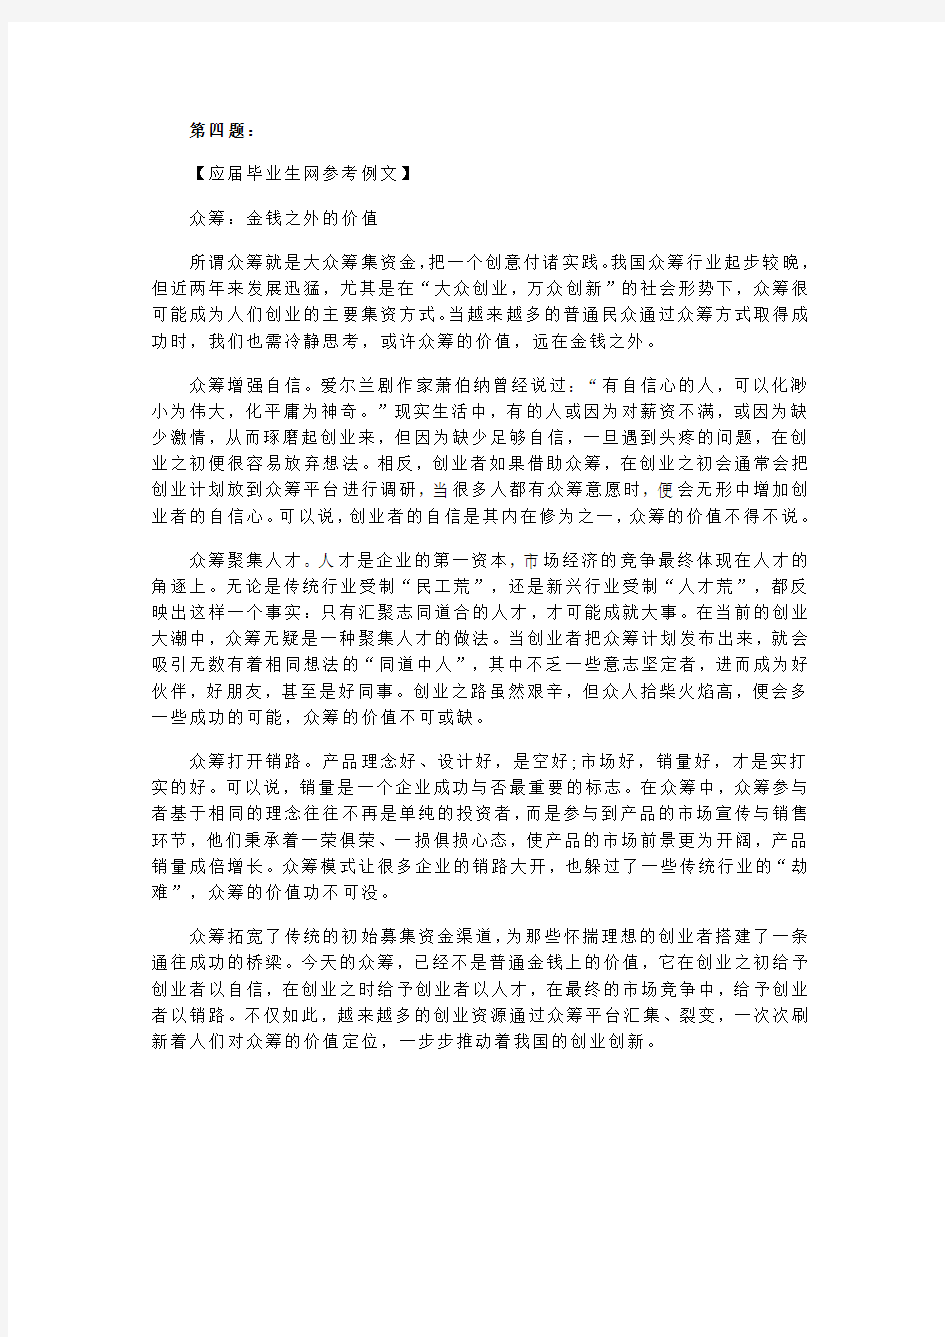 2016年湖北省公务员考试申论真题答案解析